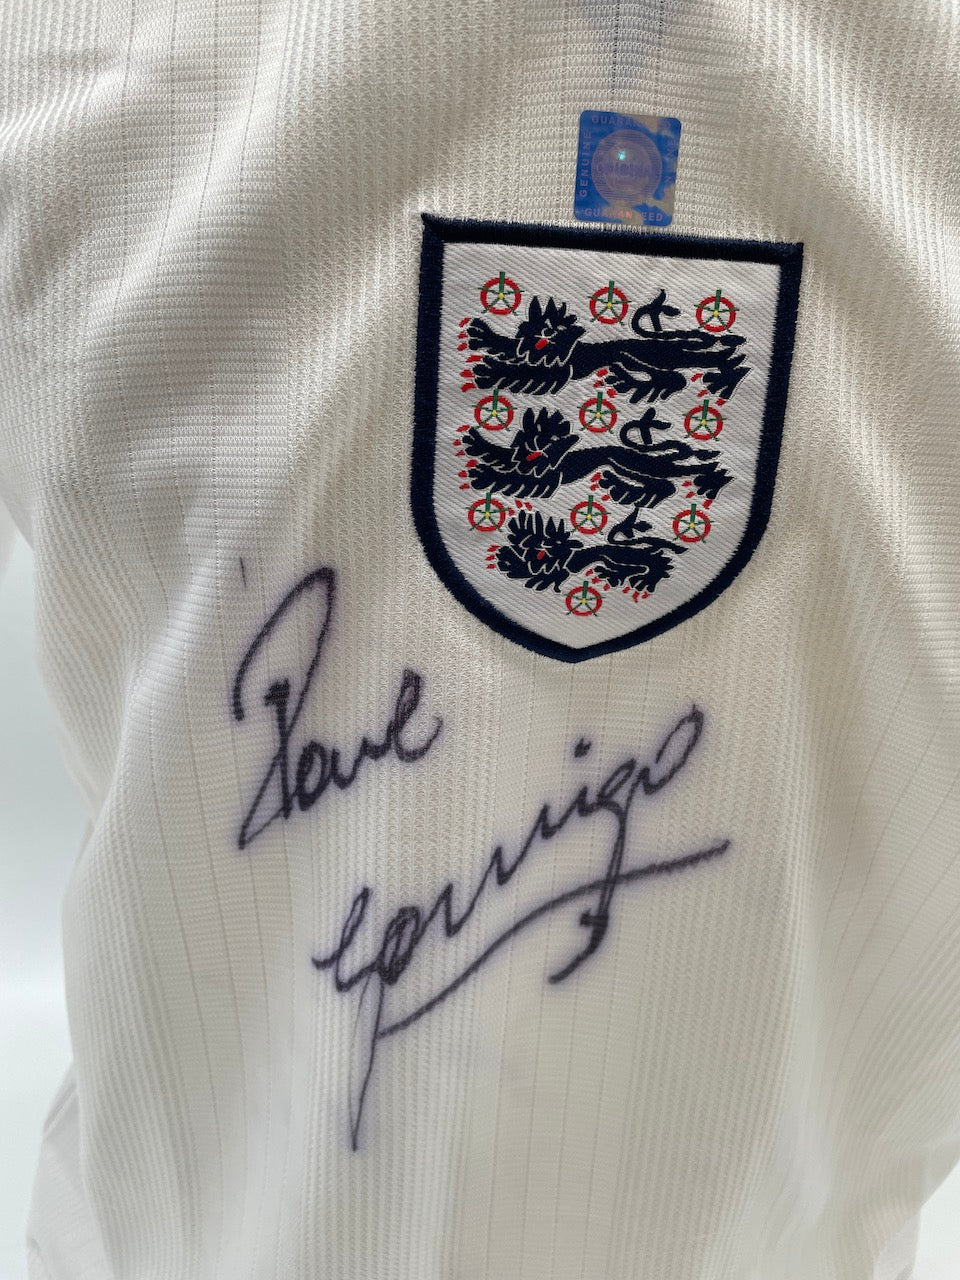 England Trikot Paul Gascoigne signiert Fußball Autogramm Football New COA S